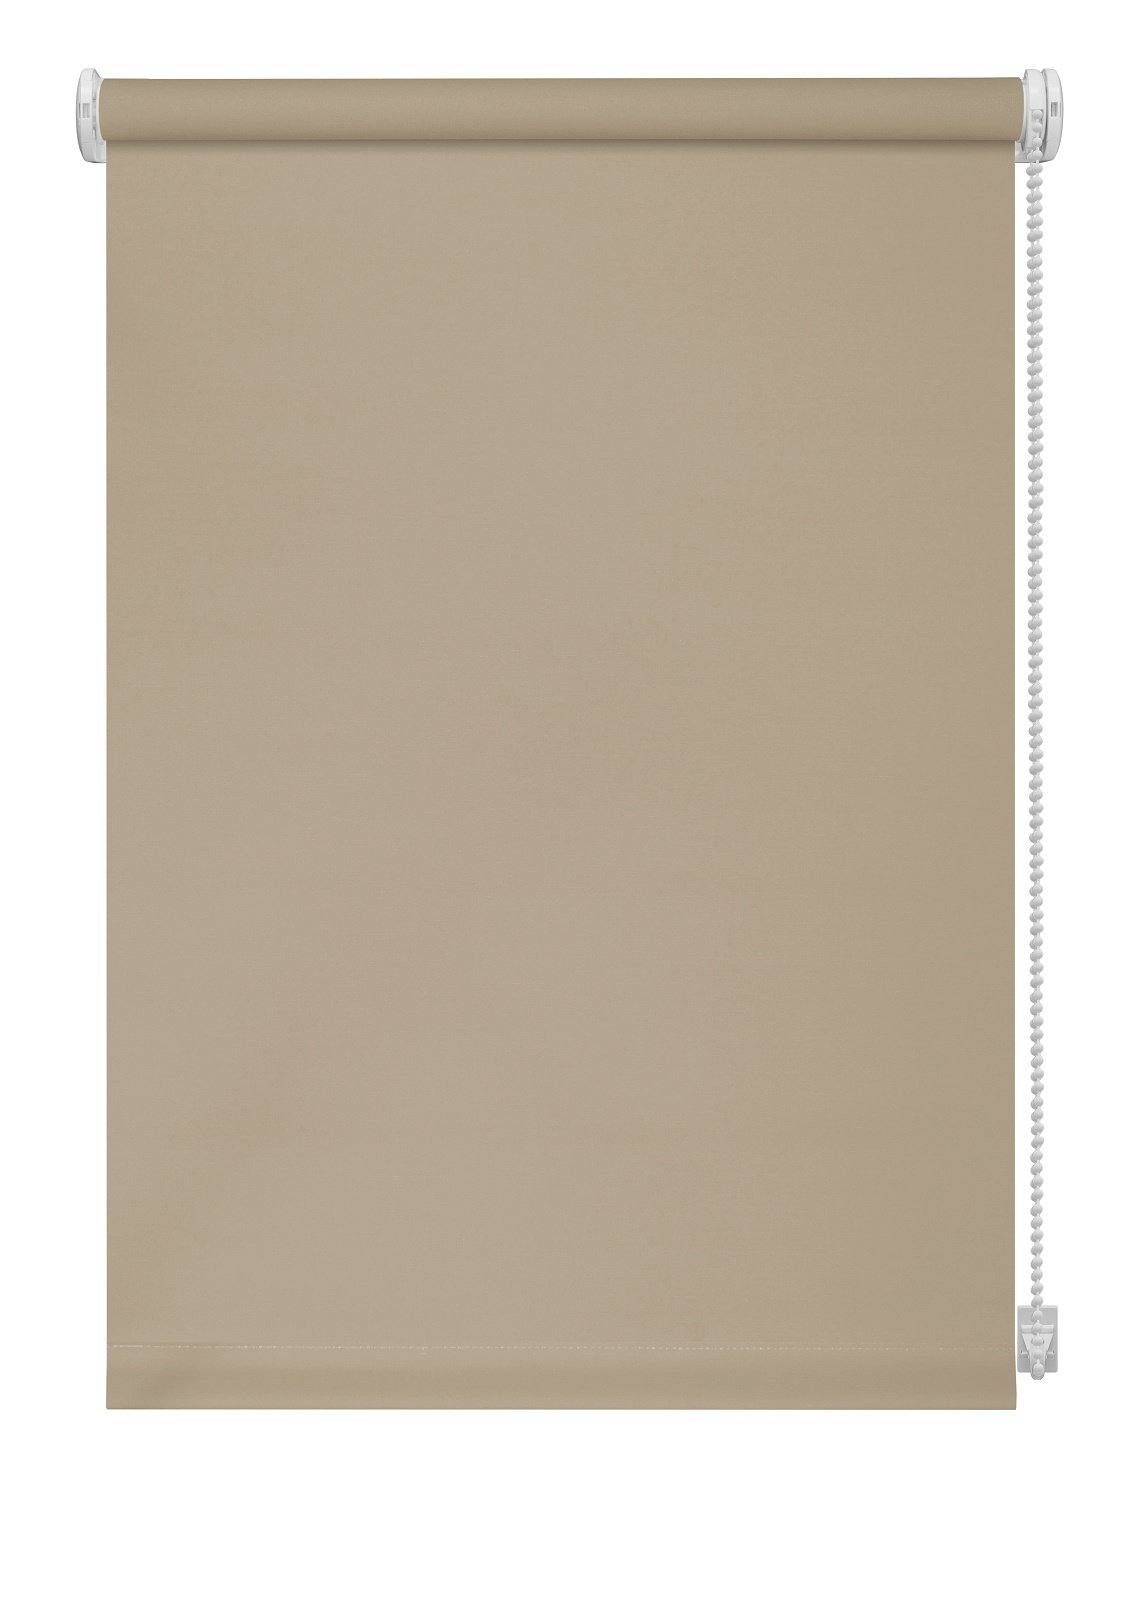 Klasikinė ritininė užuolaida LIGHT 301, smėlio sp., 60 x 170 cm - 2